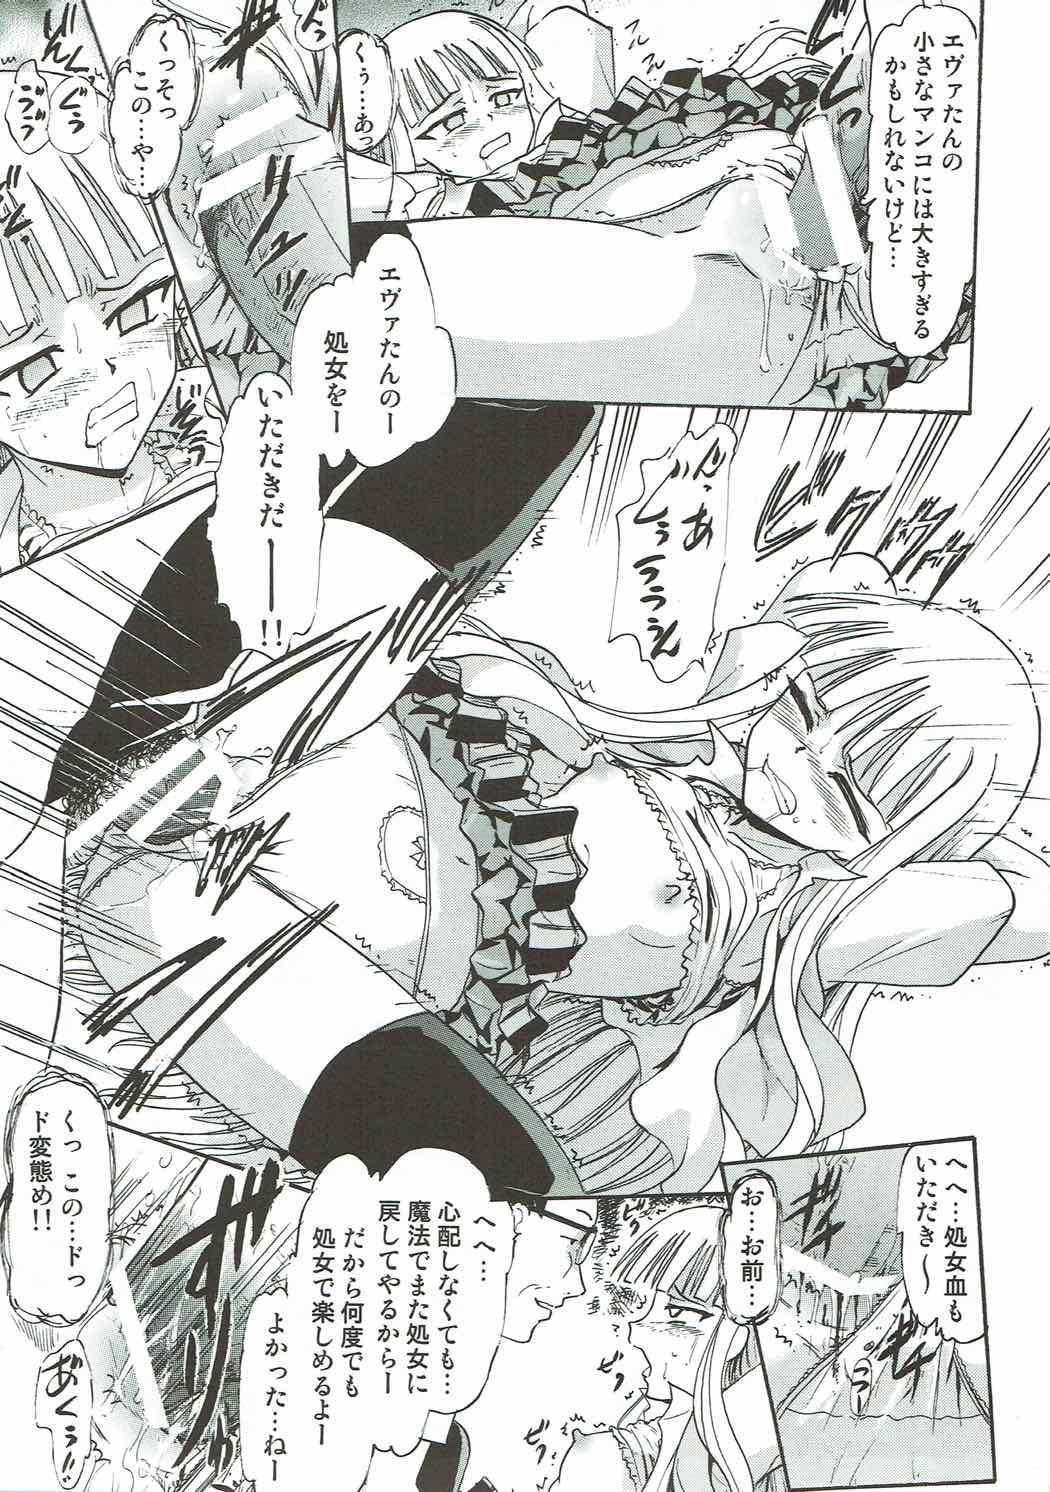 Plump Kugutsu no Eva-tan - Mahou sensei negima Mistress - Page 8